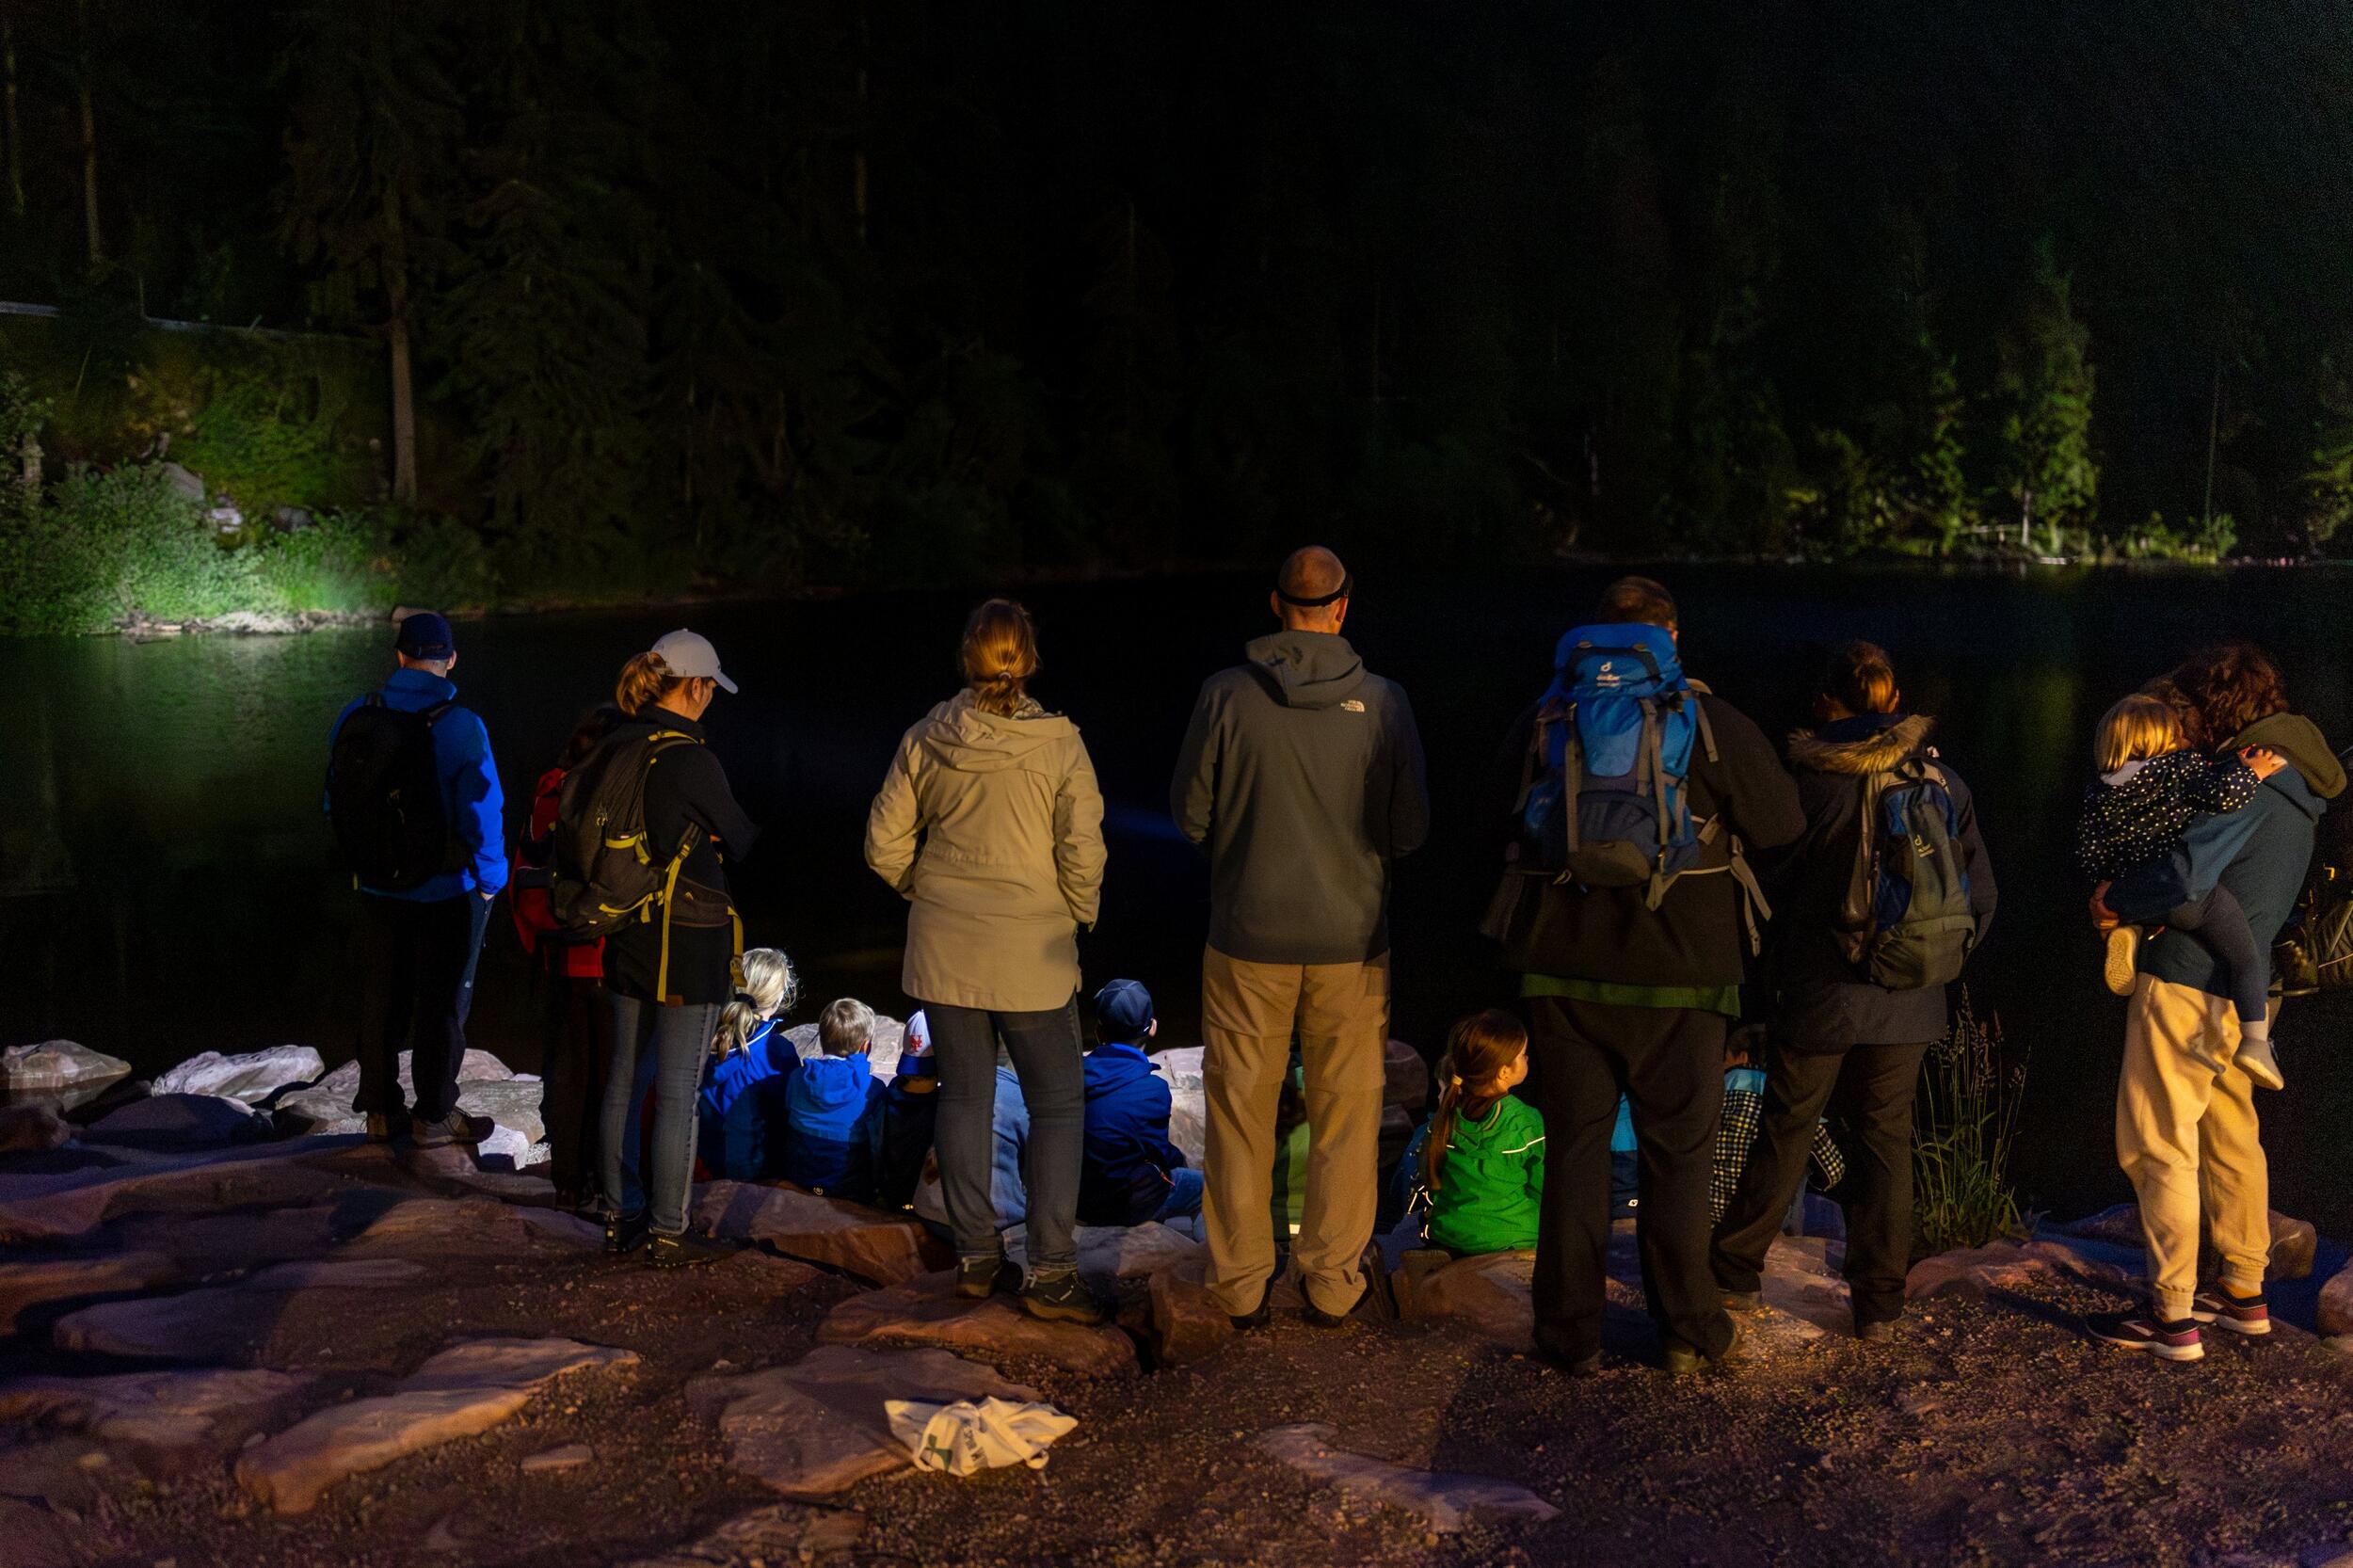 In der Dunkelheit steht und sitzt eine Gruppe Menschen an einem Seeufer.